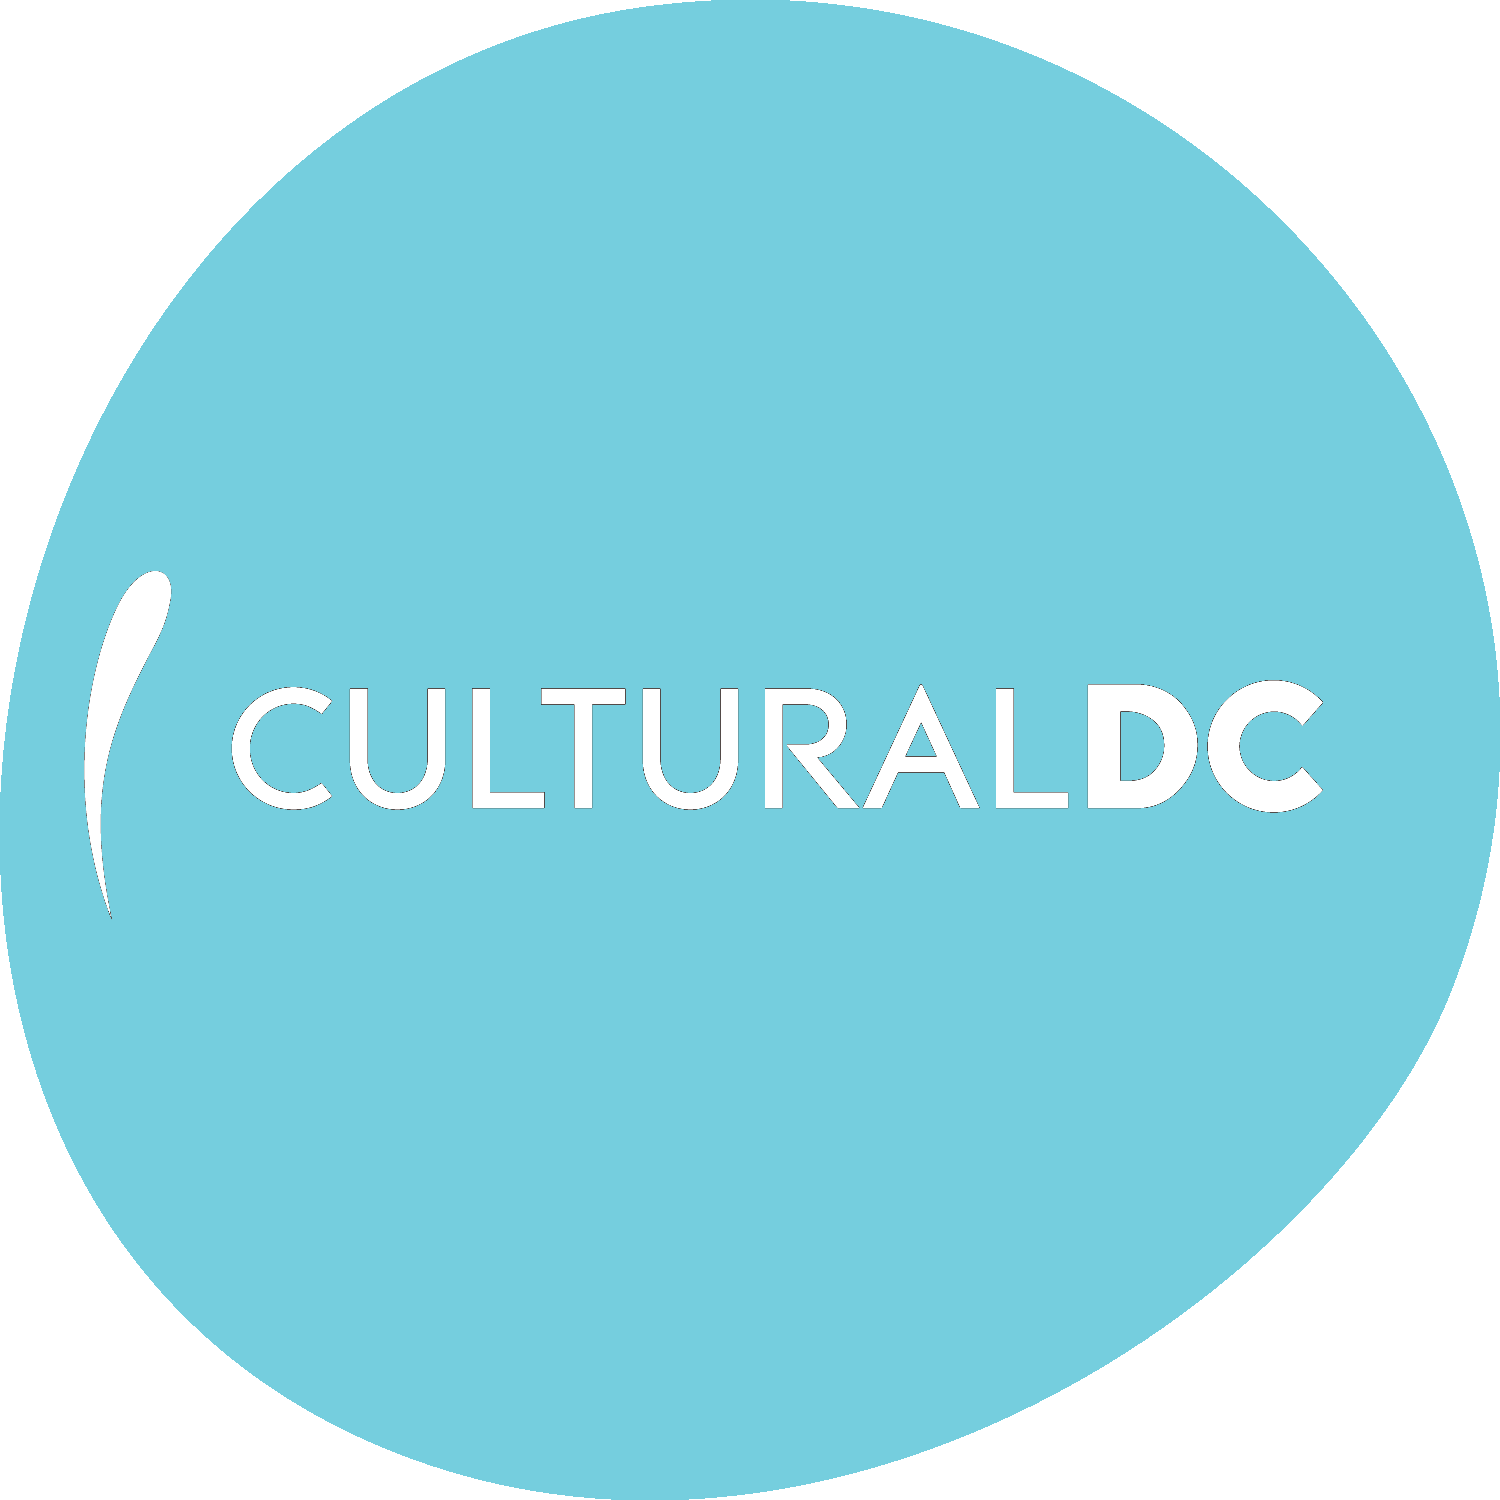 CulturalDC